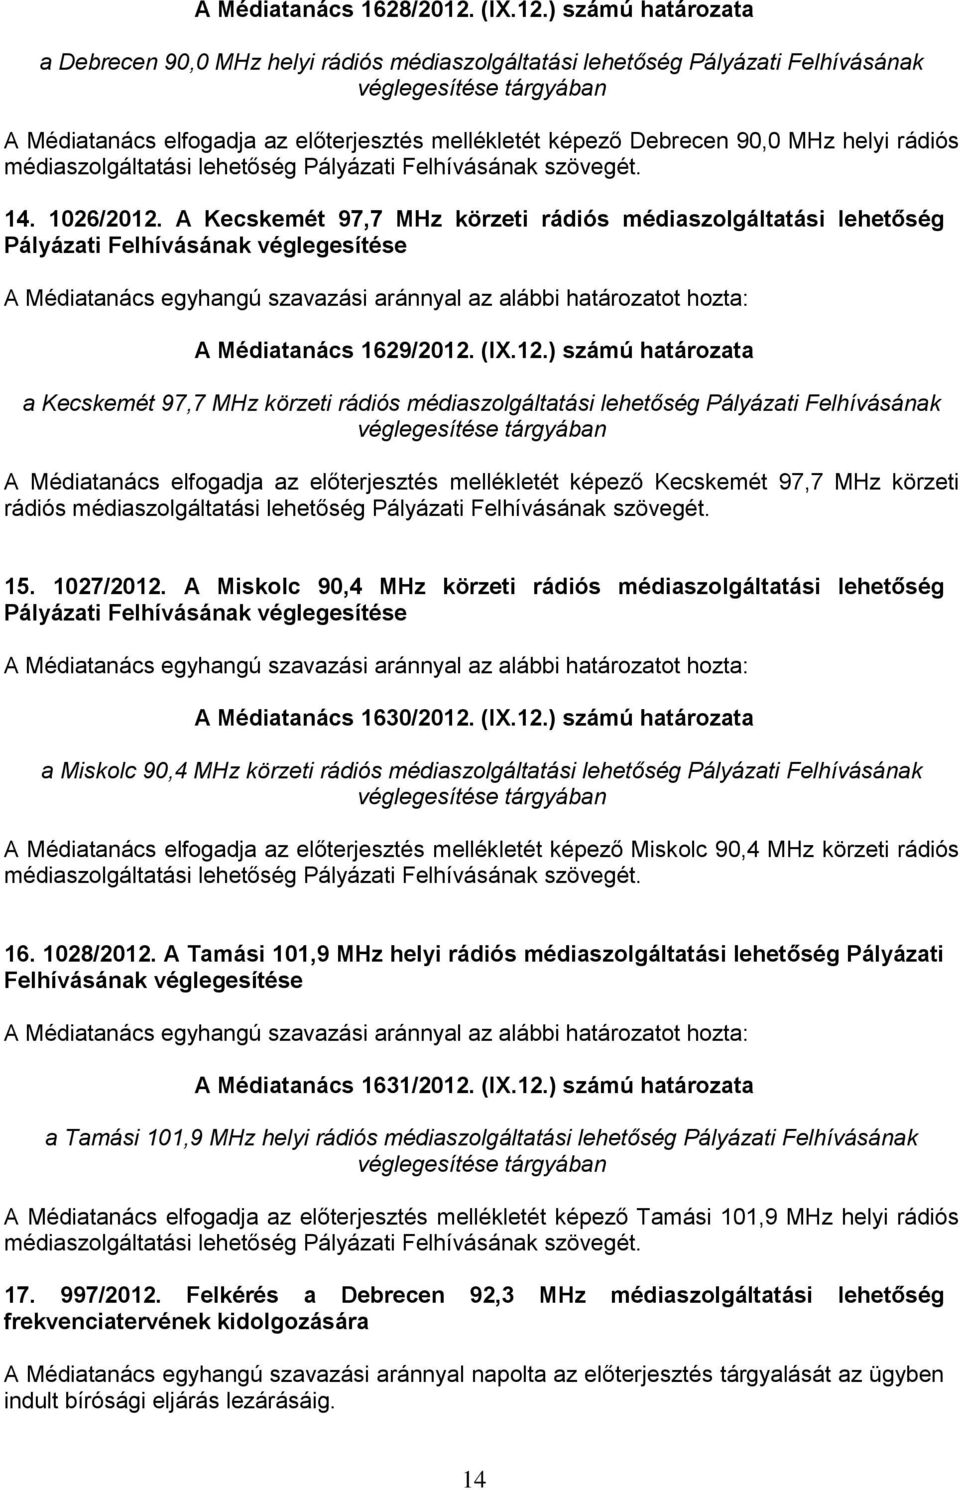 ) számú határozata a Debrecen 90,0 MHz helyi rádiós médiaszolgáltatási lehetőség Pályázati Felhívásának véglegesítése tárgyában A Médiatanács elfogadja az előterjesztés mellékletét képező Debrecen